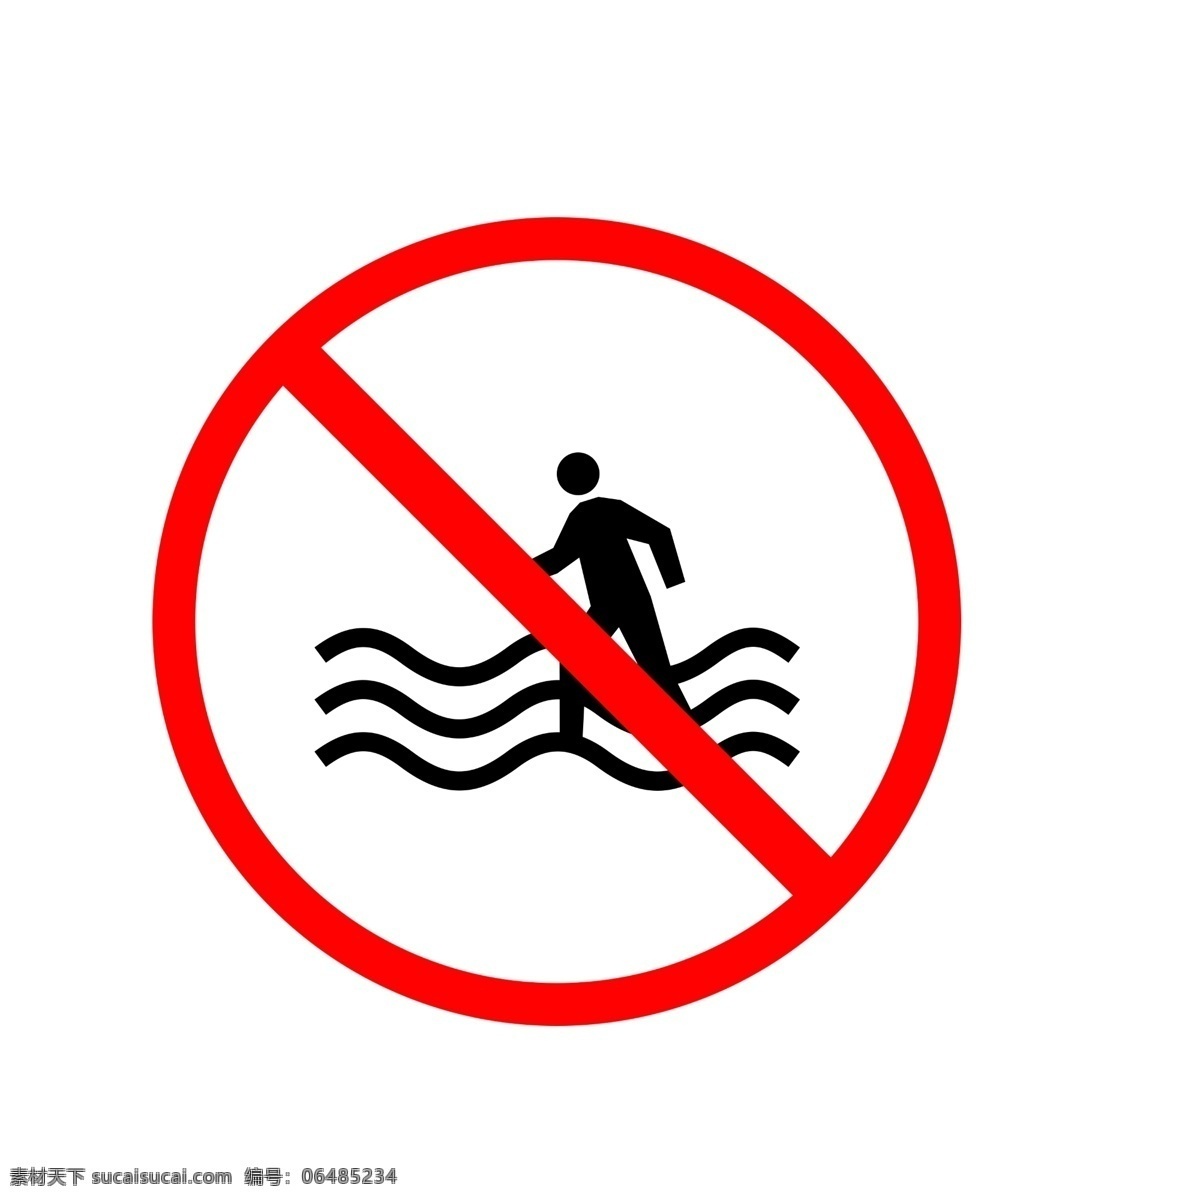 圆形 禁止 戏水 警告 牌 禁止戏水 圆形警告牌 小心谨慎 提示语 禁止标识 警告牌 温馨 提示 警示牌